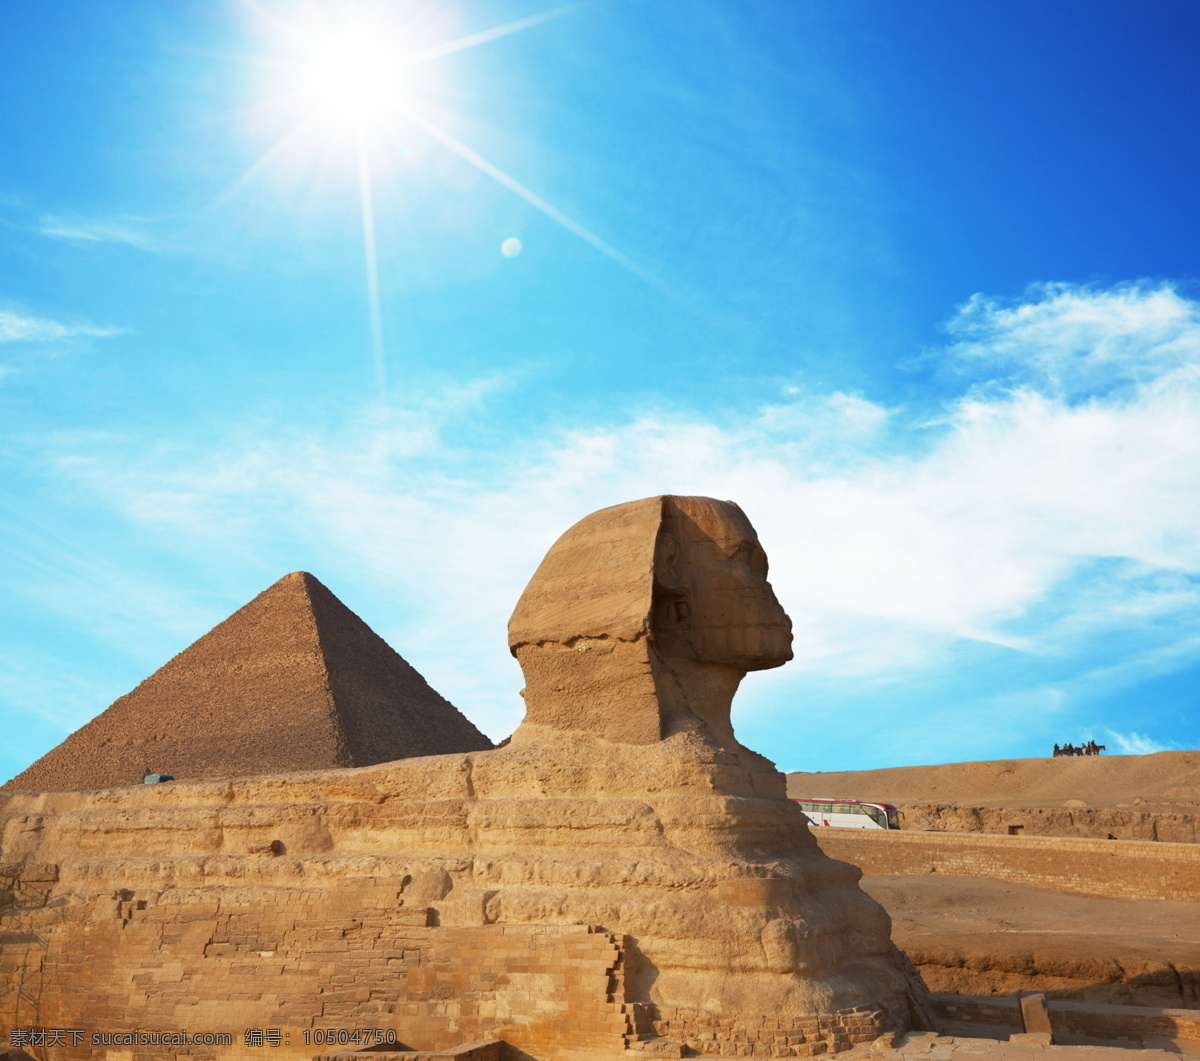 埃及 金字塔 埃及金字塔 非洲 旅游 旅游摄影 国外 国外旅游 古埃及 狮身人面 狮身人面像 法老 陵墓 景点 石头 风景 名胜古迹 风景图片